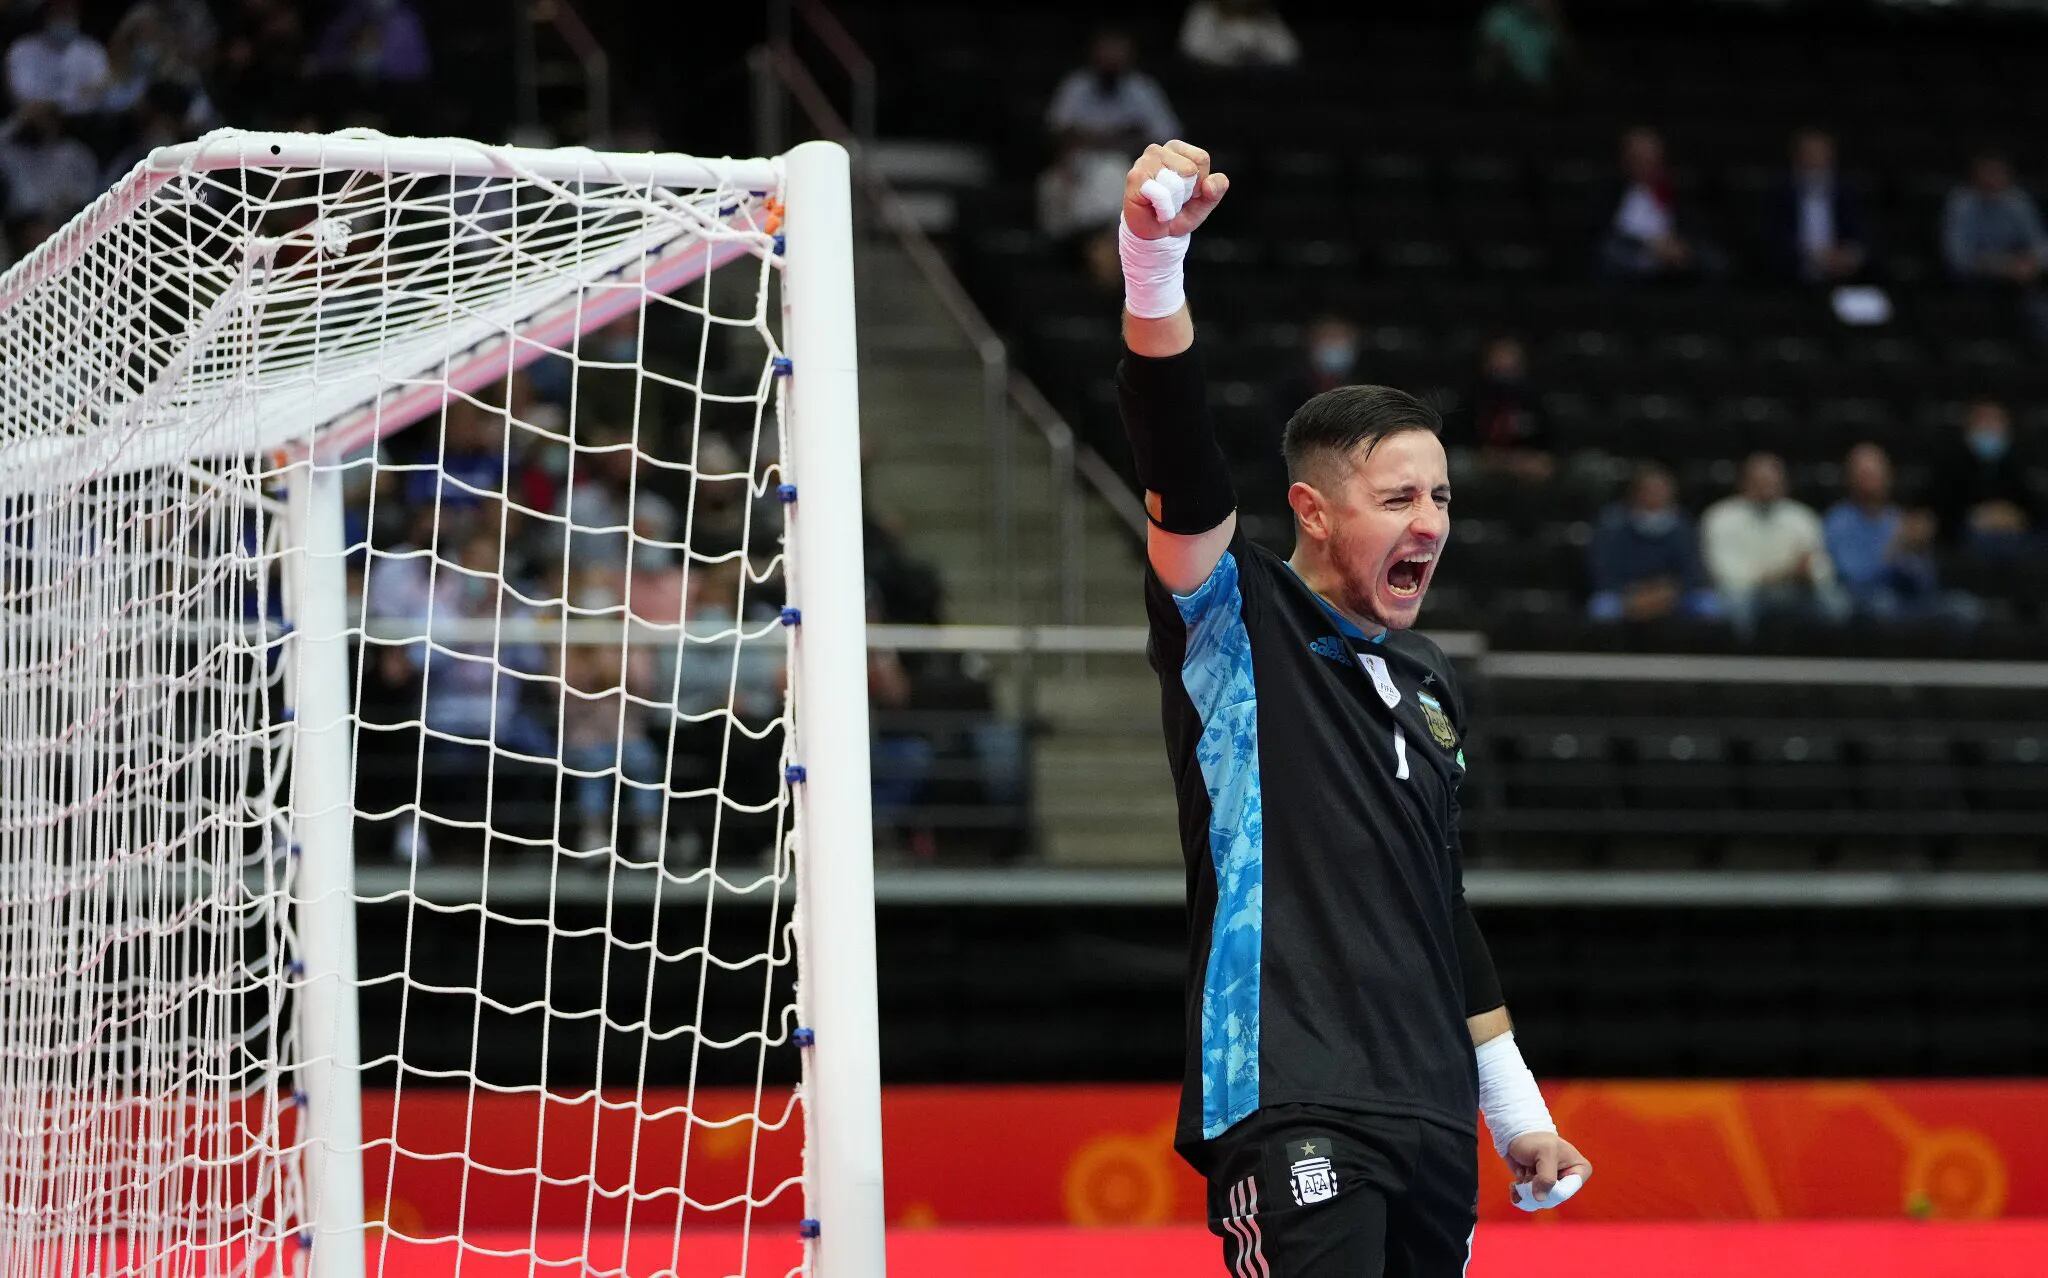 Mundial de futsal: Argentina ganó por penales y se enfrentará a Brasil en las semifinales